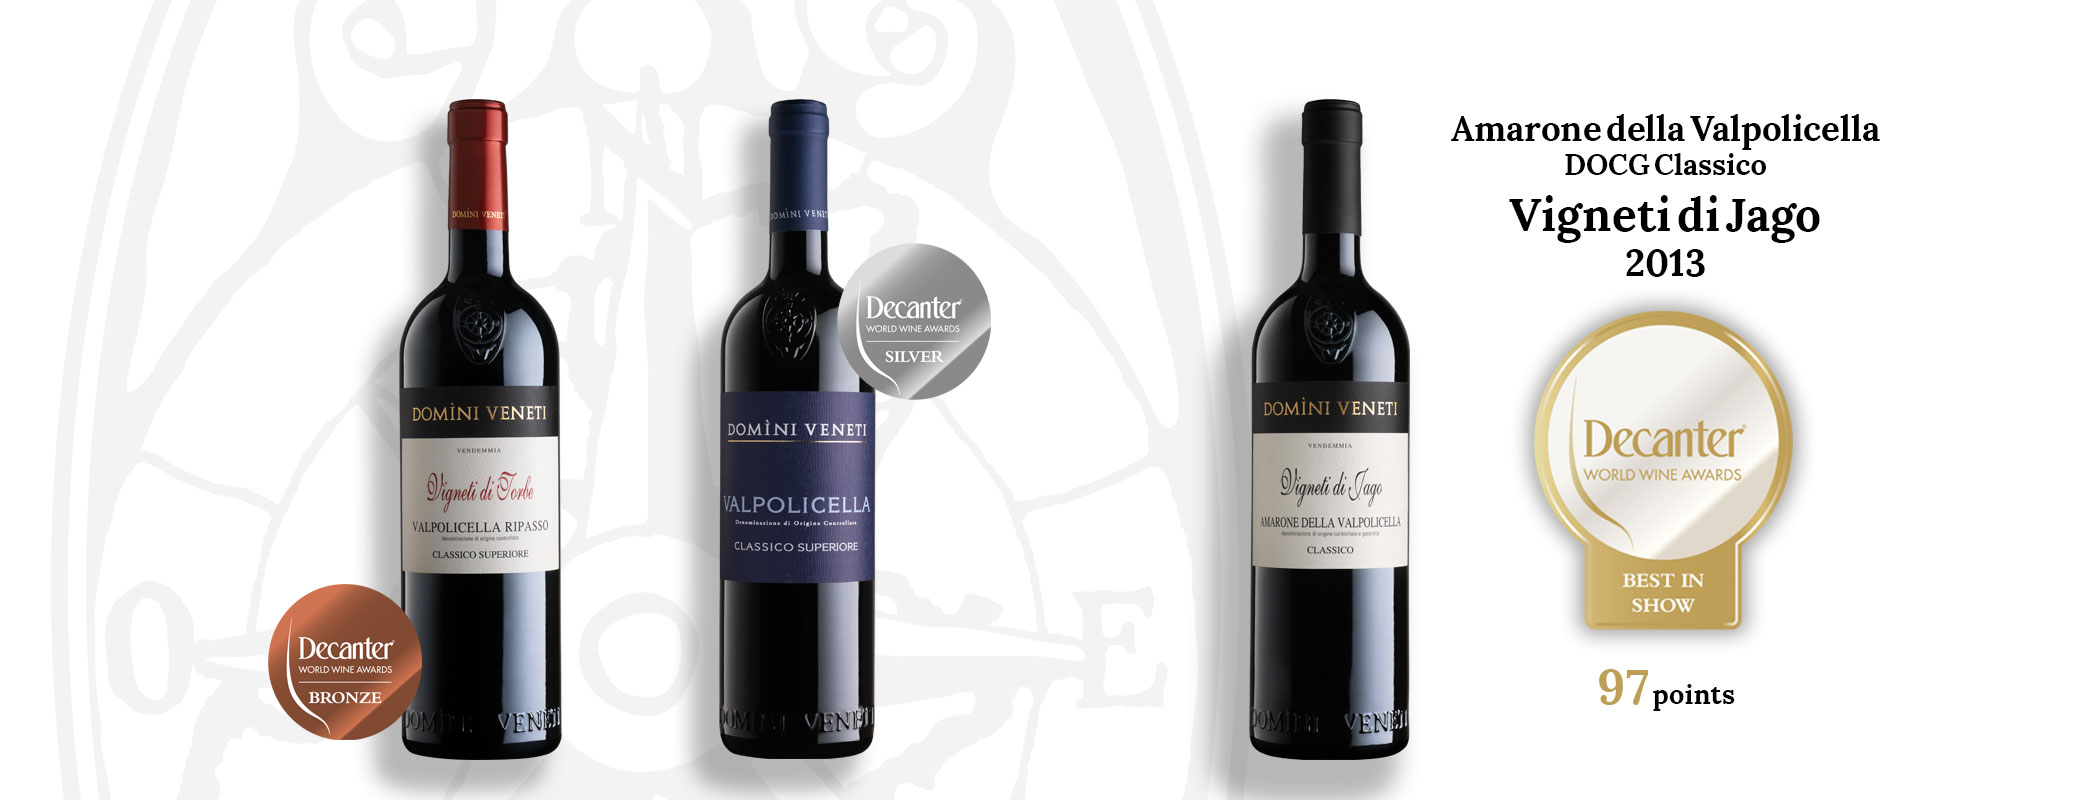 Best in Show: Amarone Vigneti di Jago 2013 Domìni Veneti al Decanter World Wine Award 2019 - 1